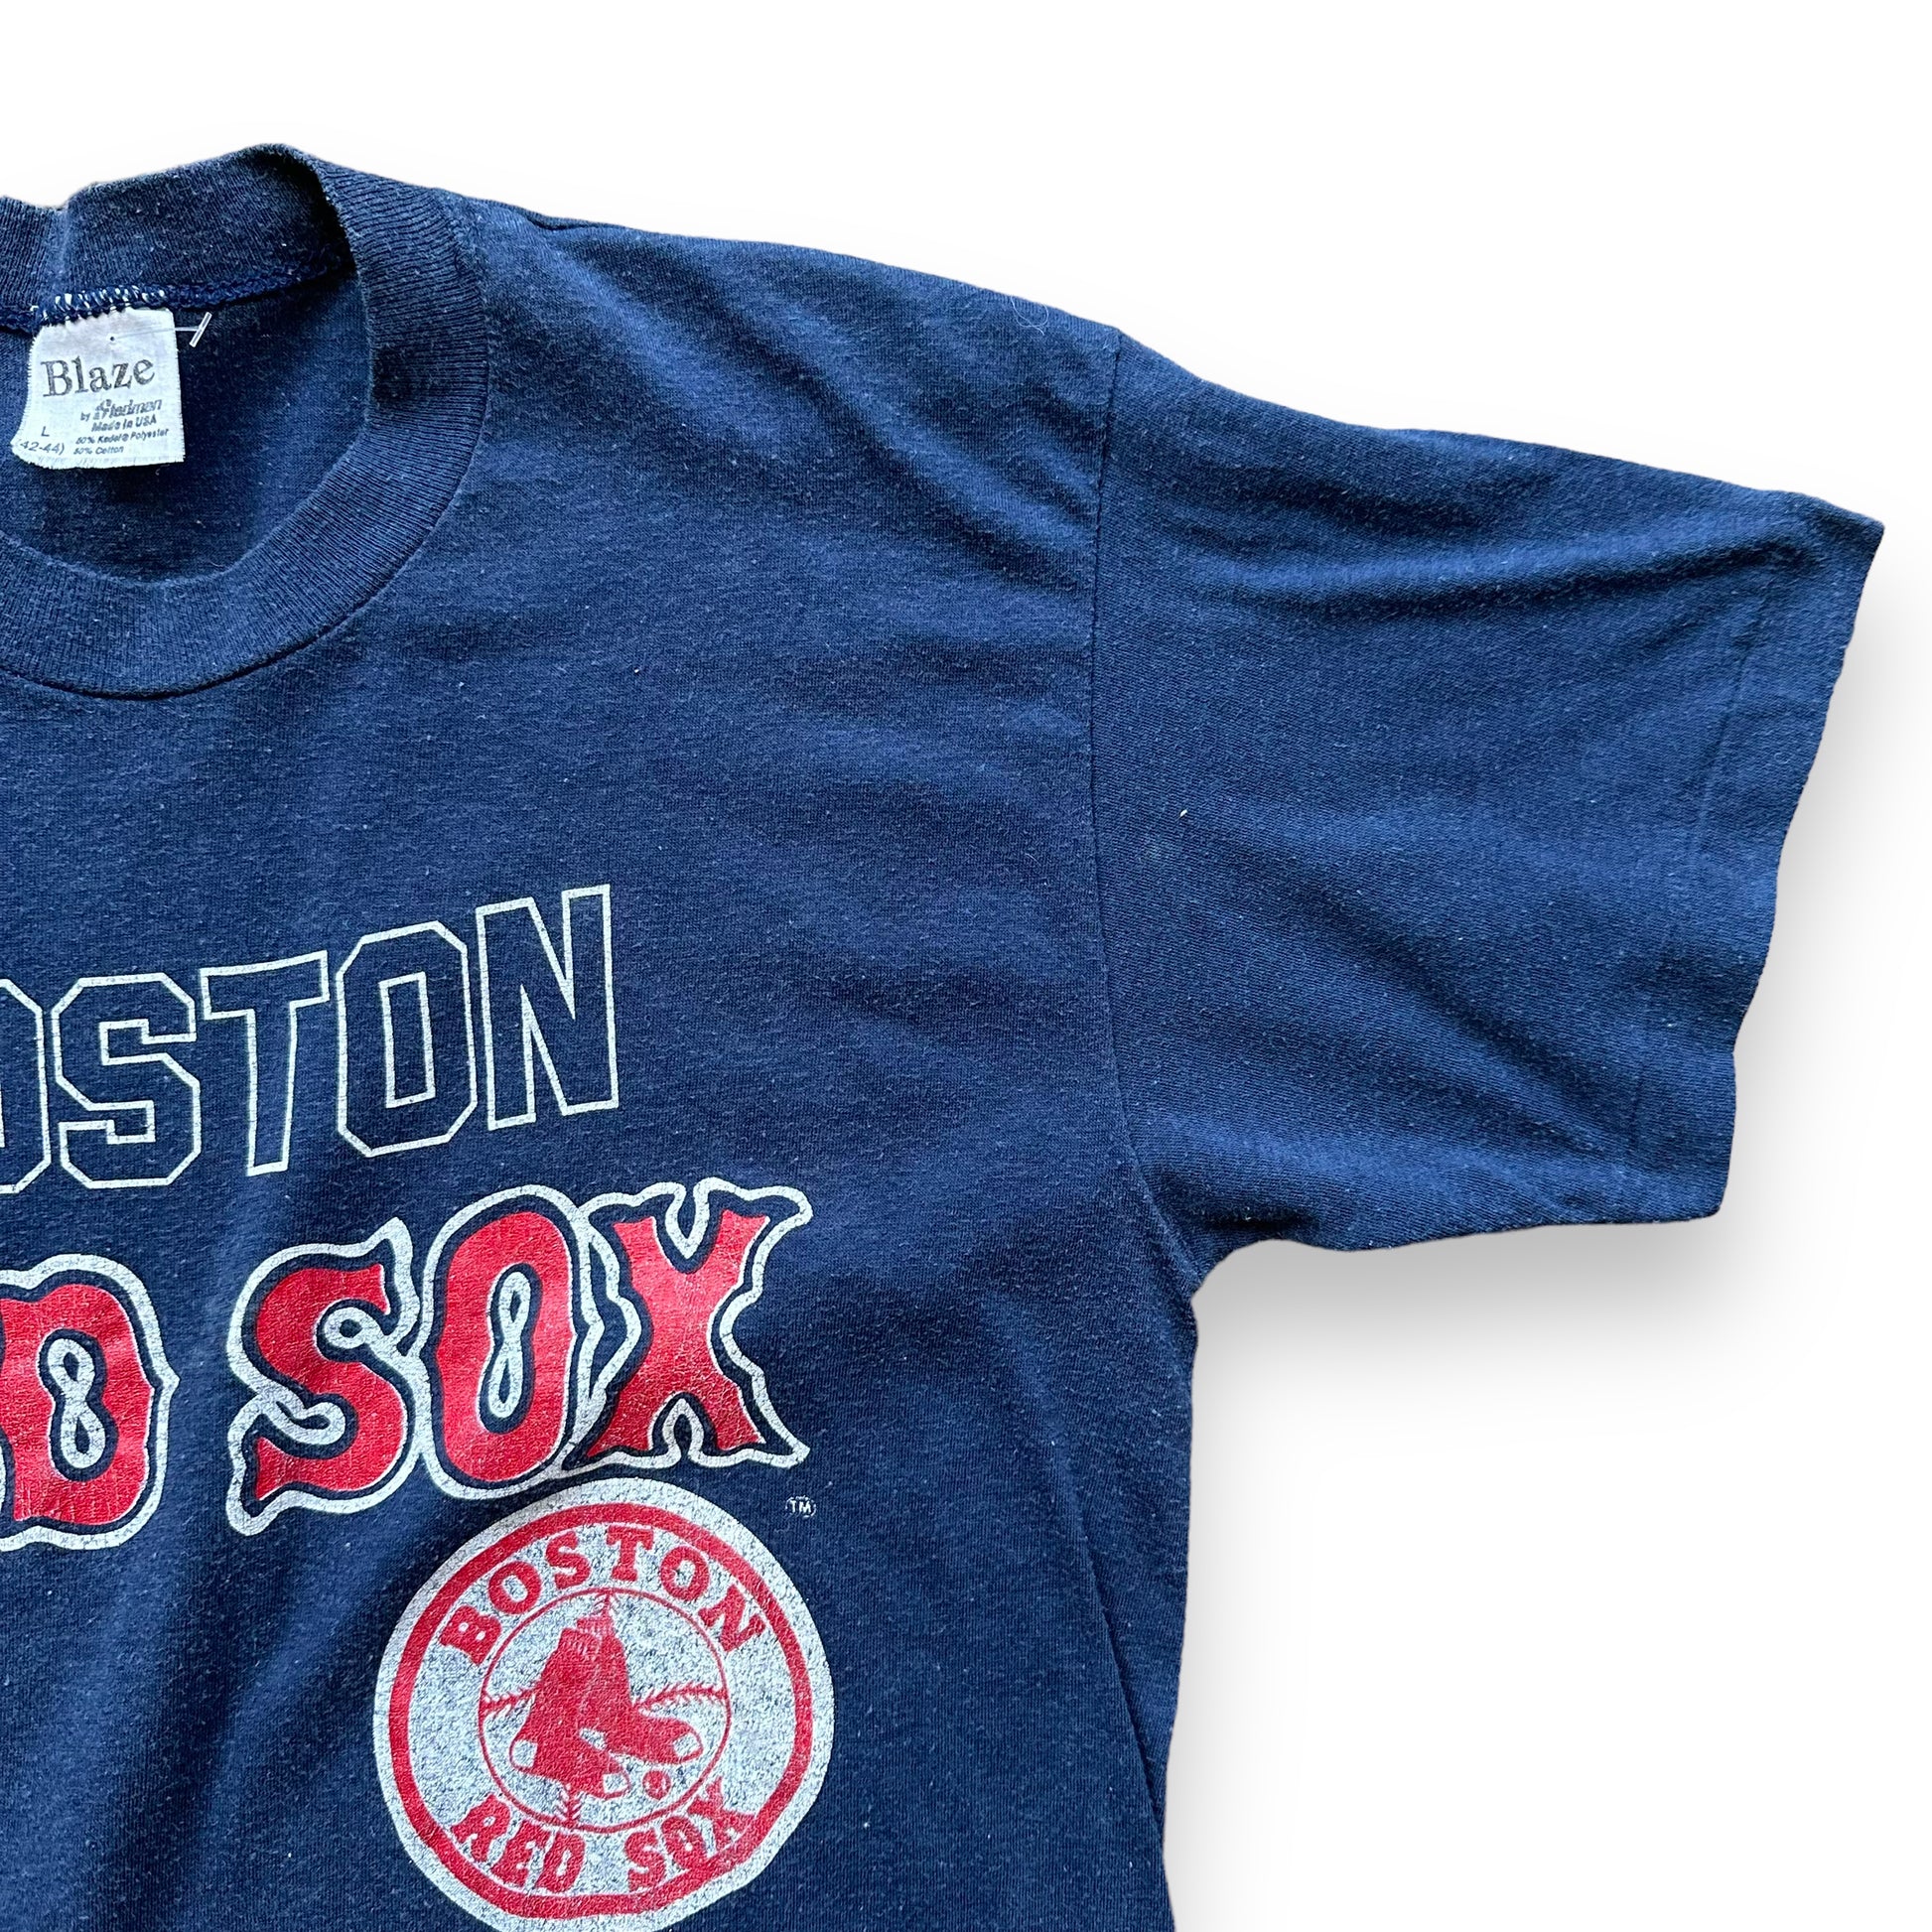 Boston Red Sox Retro Summer Pattern Hawaiian Shirt - Limotees